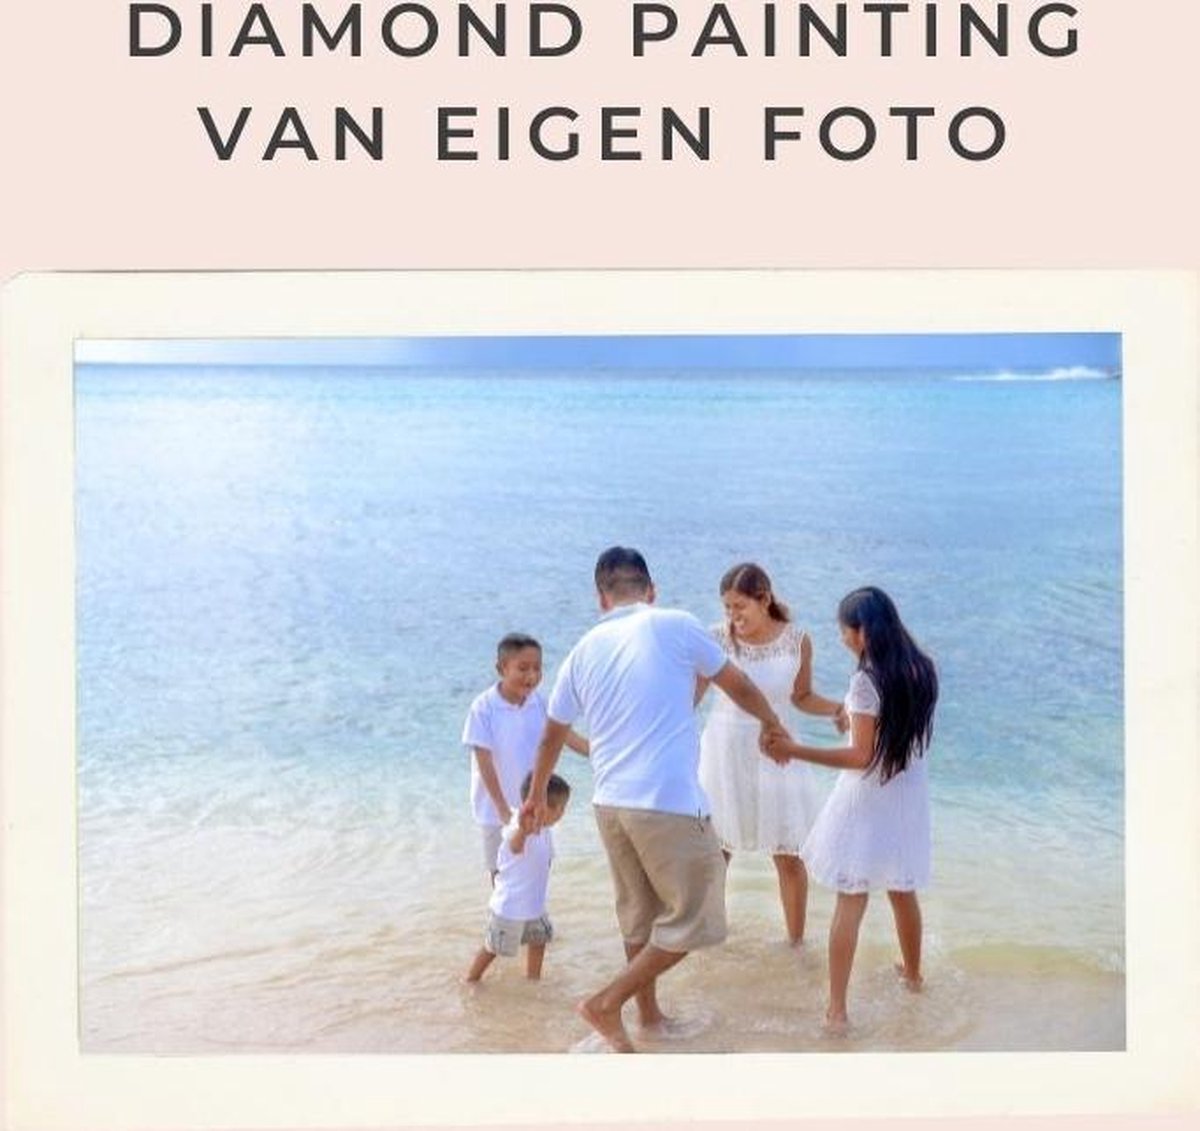 Diamond painting eigen foto - Geproduceerd in Nederland - 50 x 70 cm - dibond materiaal - vierkante steentjes - Binnen 2-3 werkdagen in huis